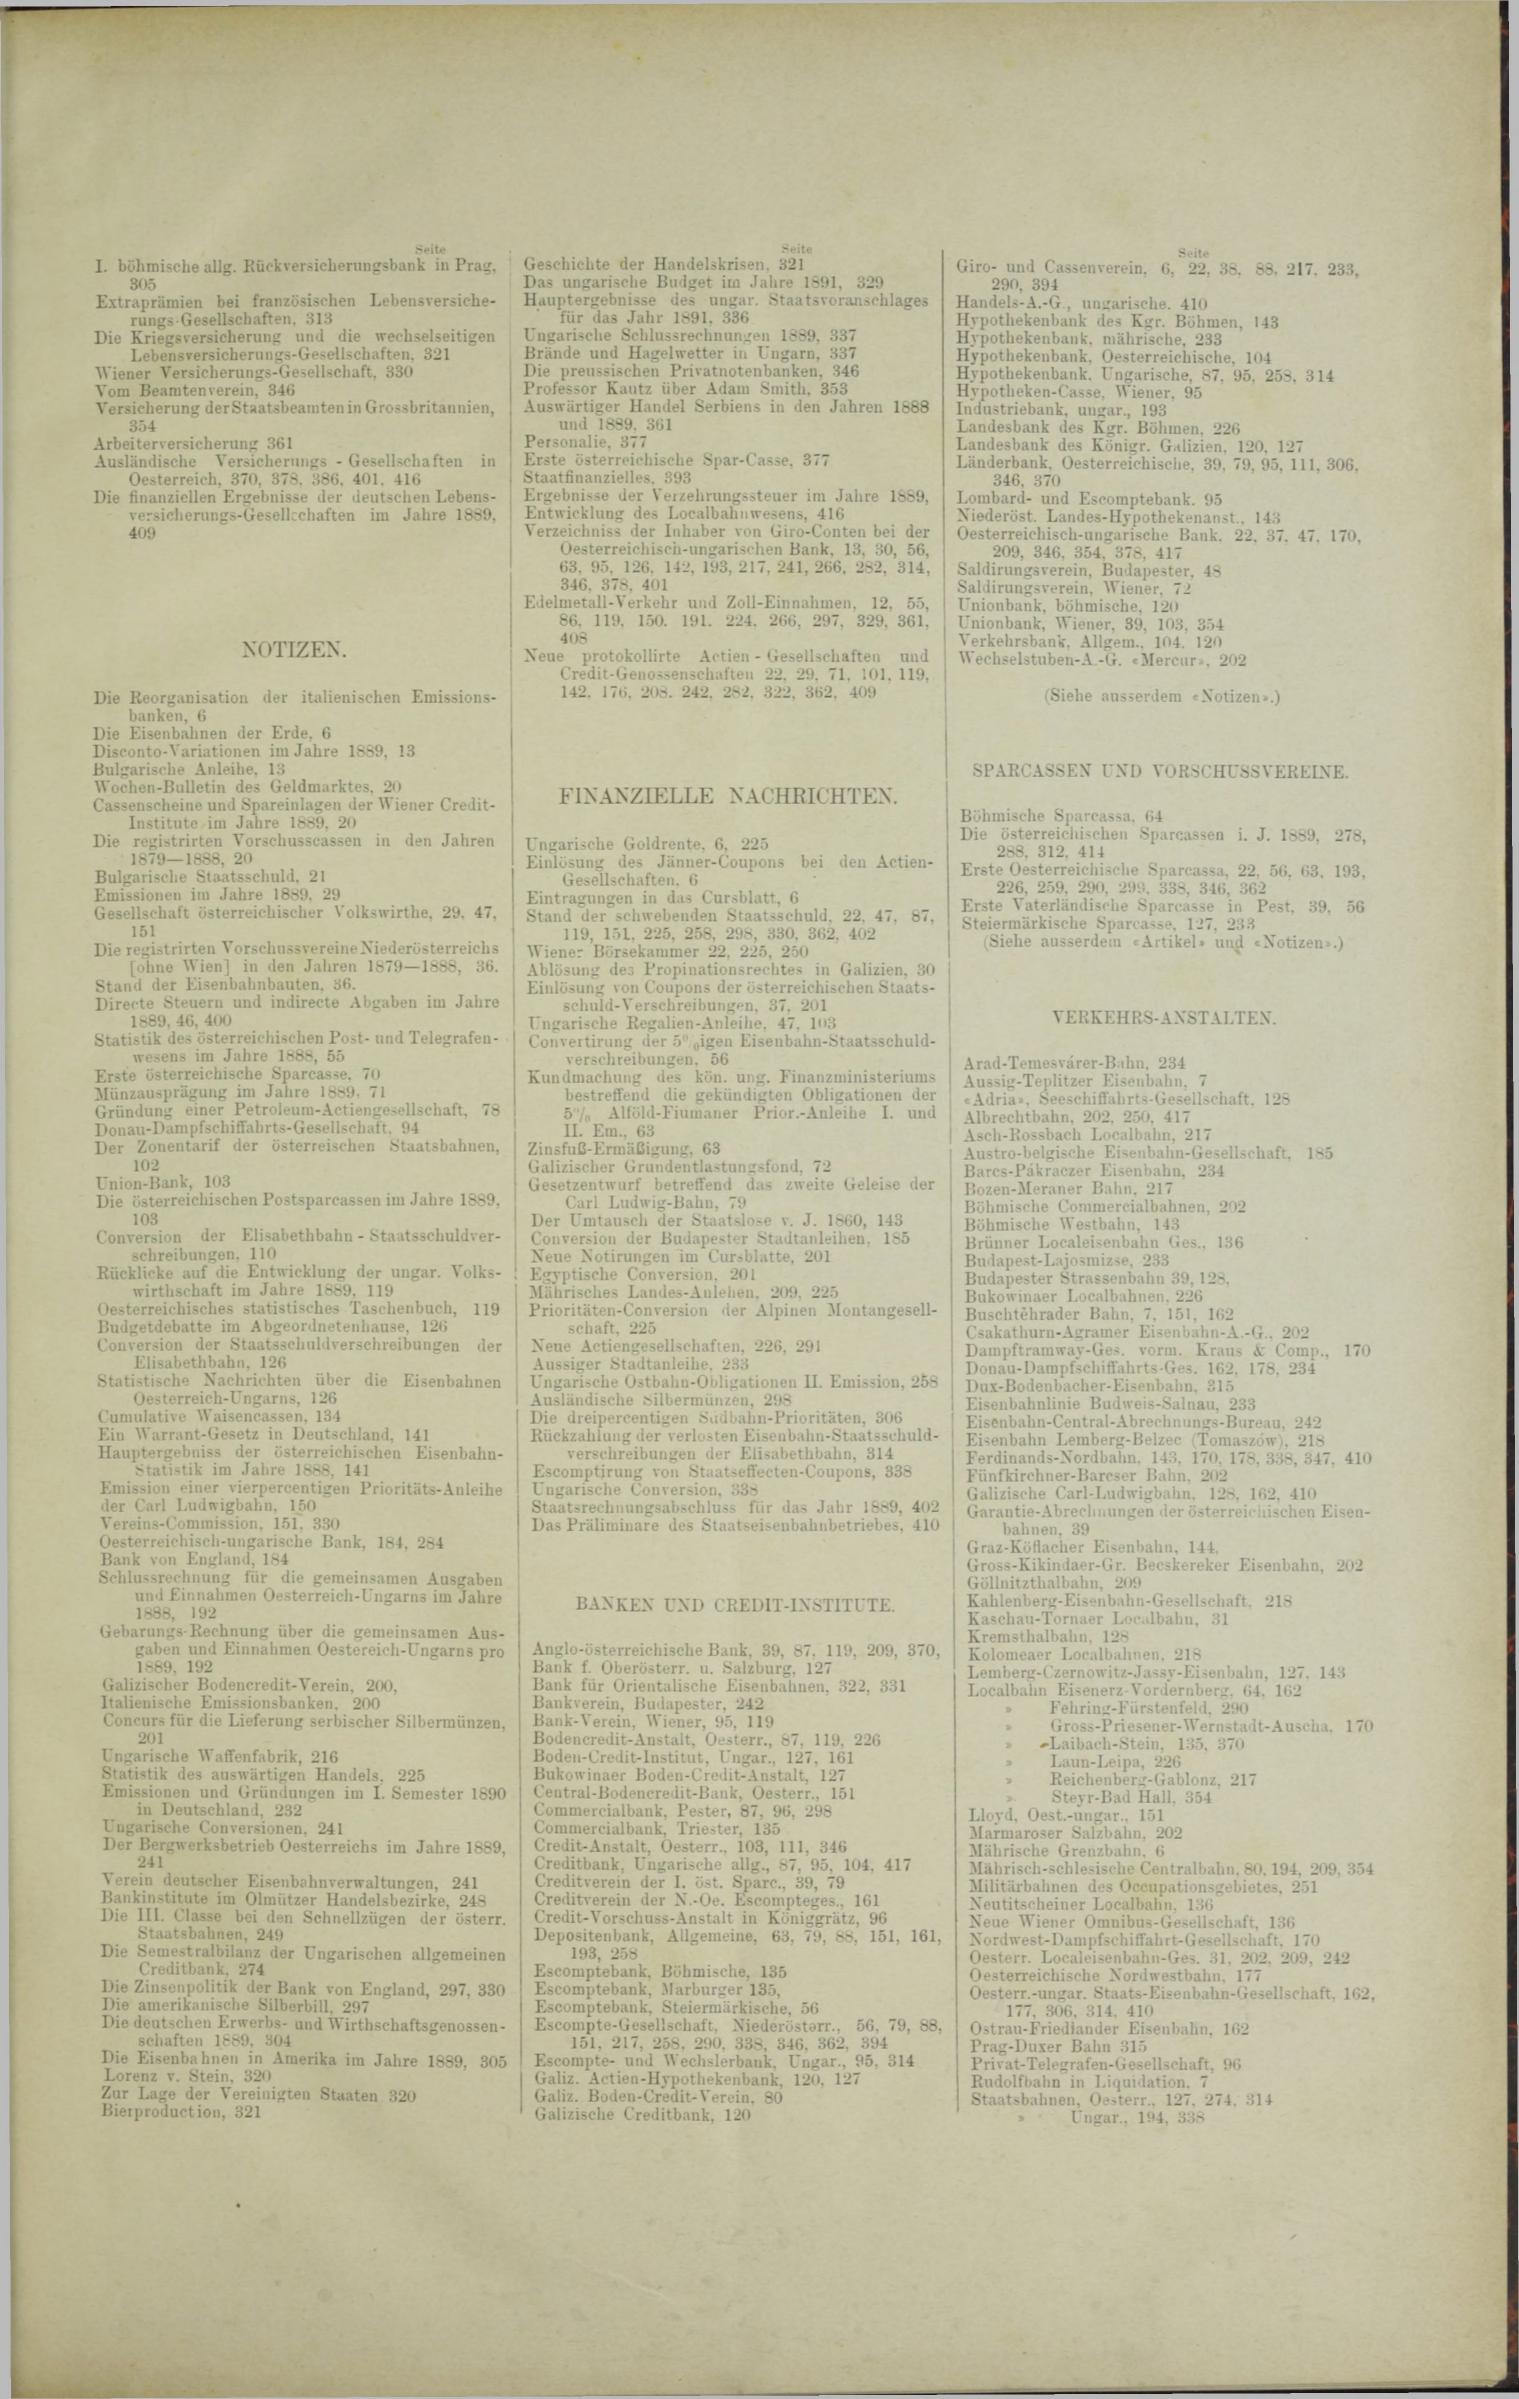 Der Tresor 06.02.1890 - Seite 13